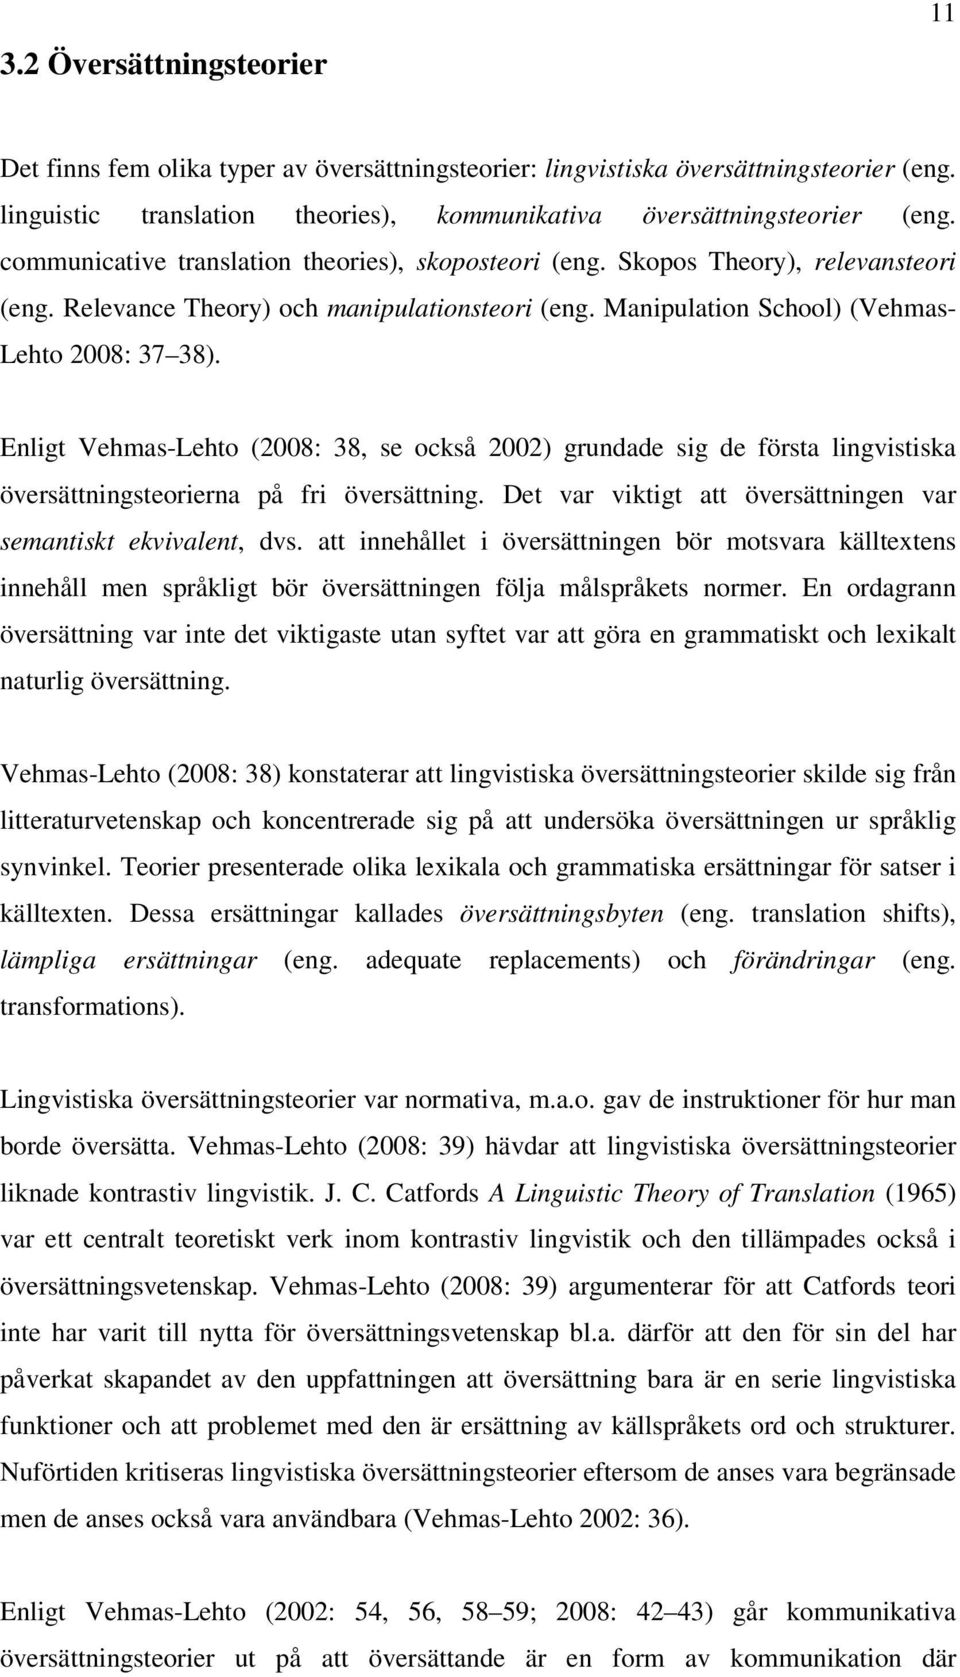 Enligt Vehmas-Lehto (2008: 38, se också 2002) grundade sig de första lingvistiska översättningsteorierna på fri översättning. Det var viktigt att översättningen var semantiskt ekvivalent, dvs.